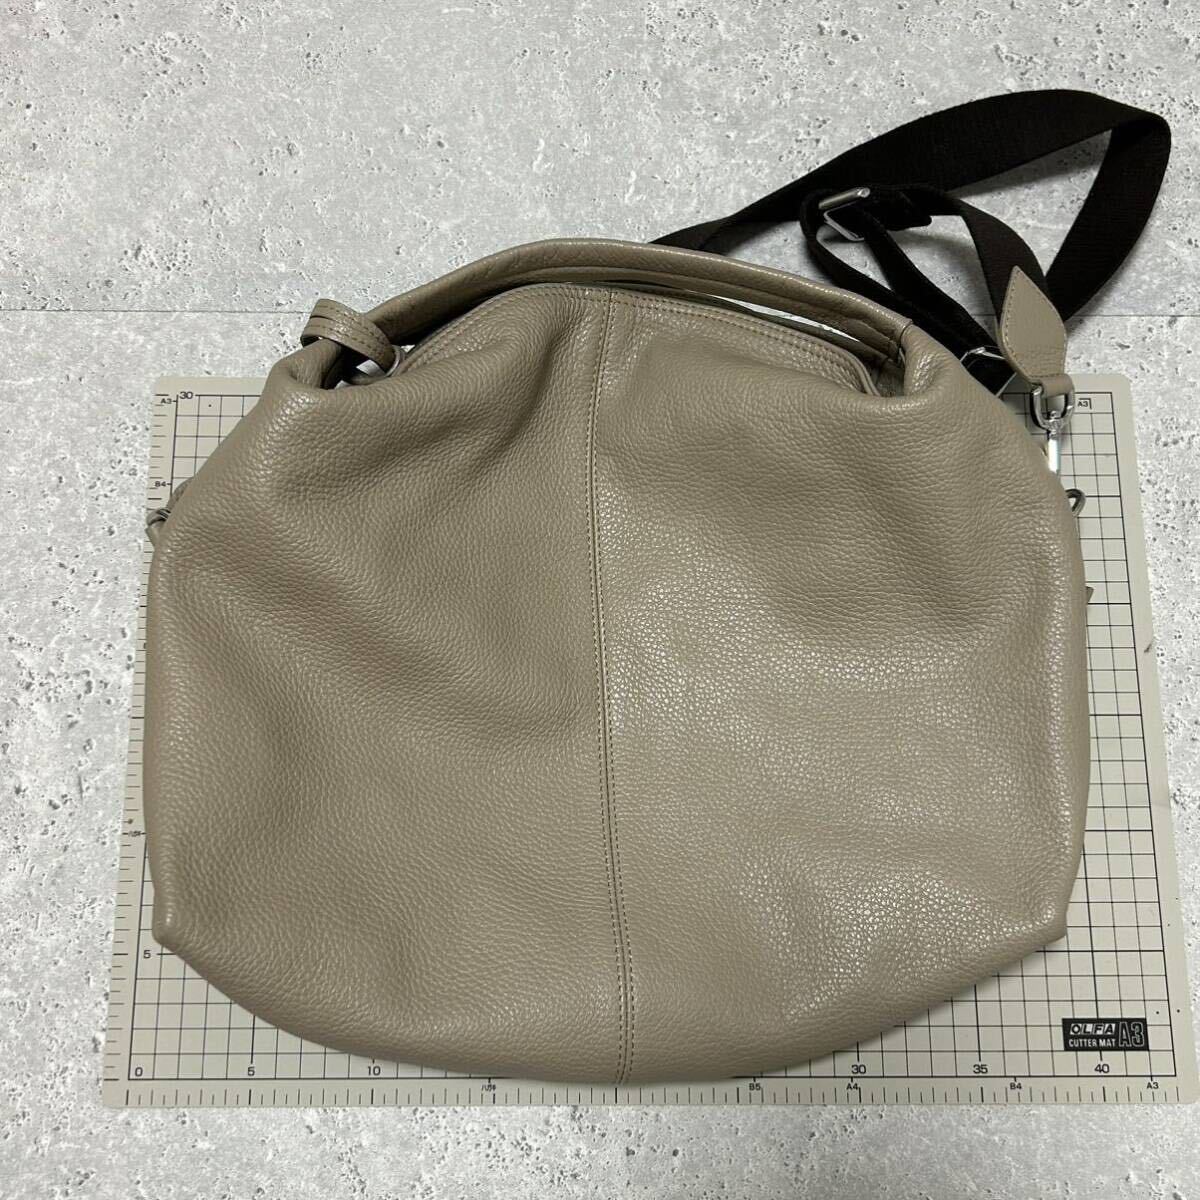  Furla FURLA leather bag beige handbag shoulder bag 2way leather shoulder .. shoulder superior article 